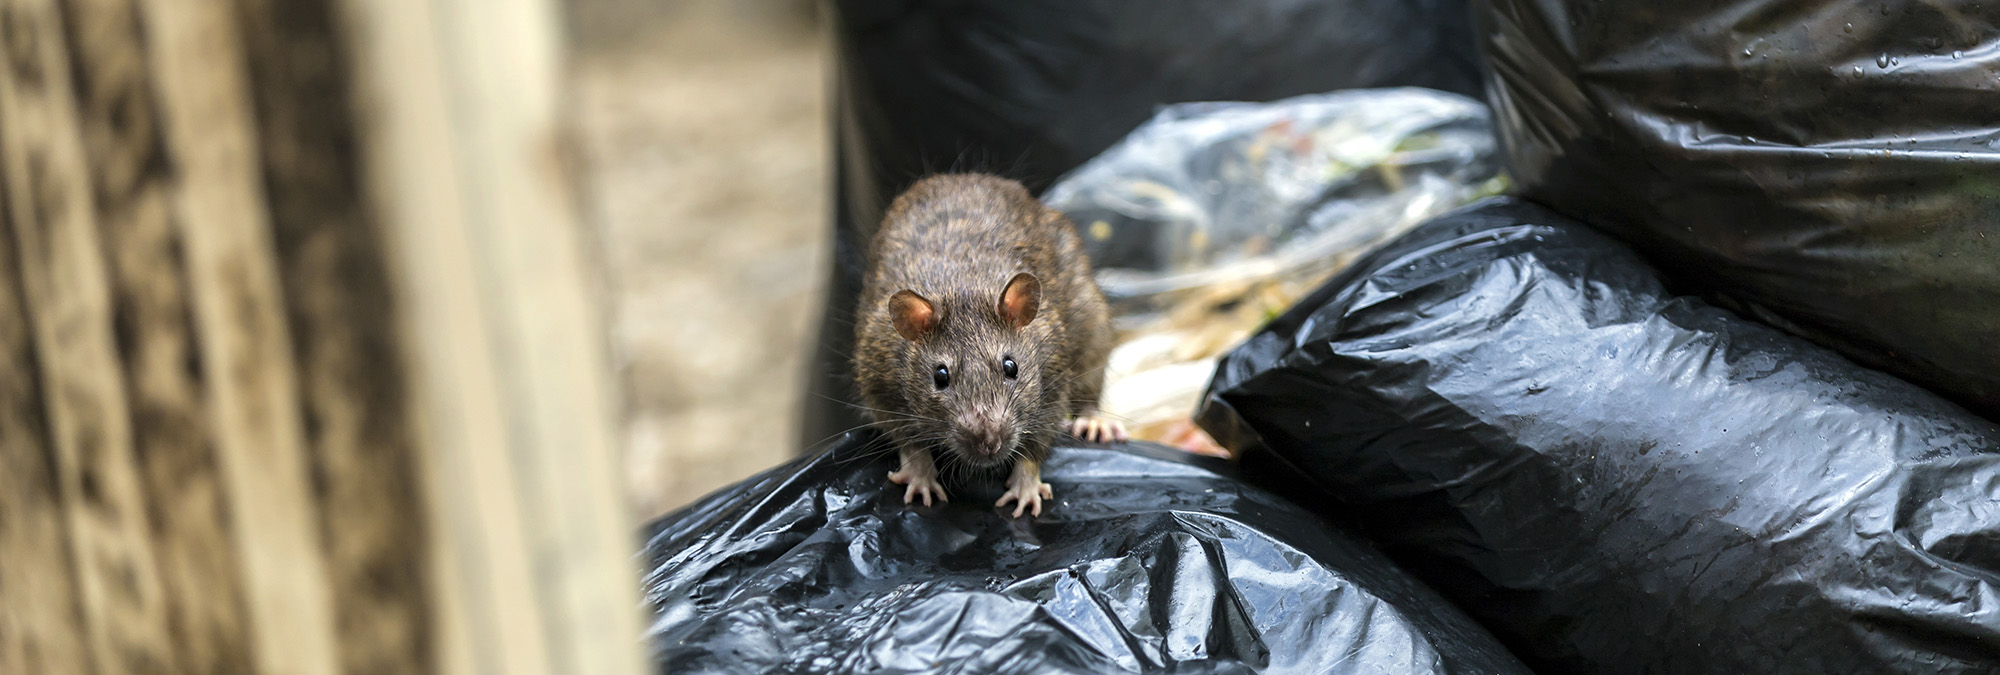 Ratten suchen nach neuen Räumen